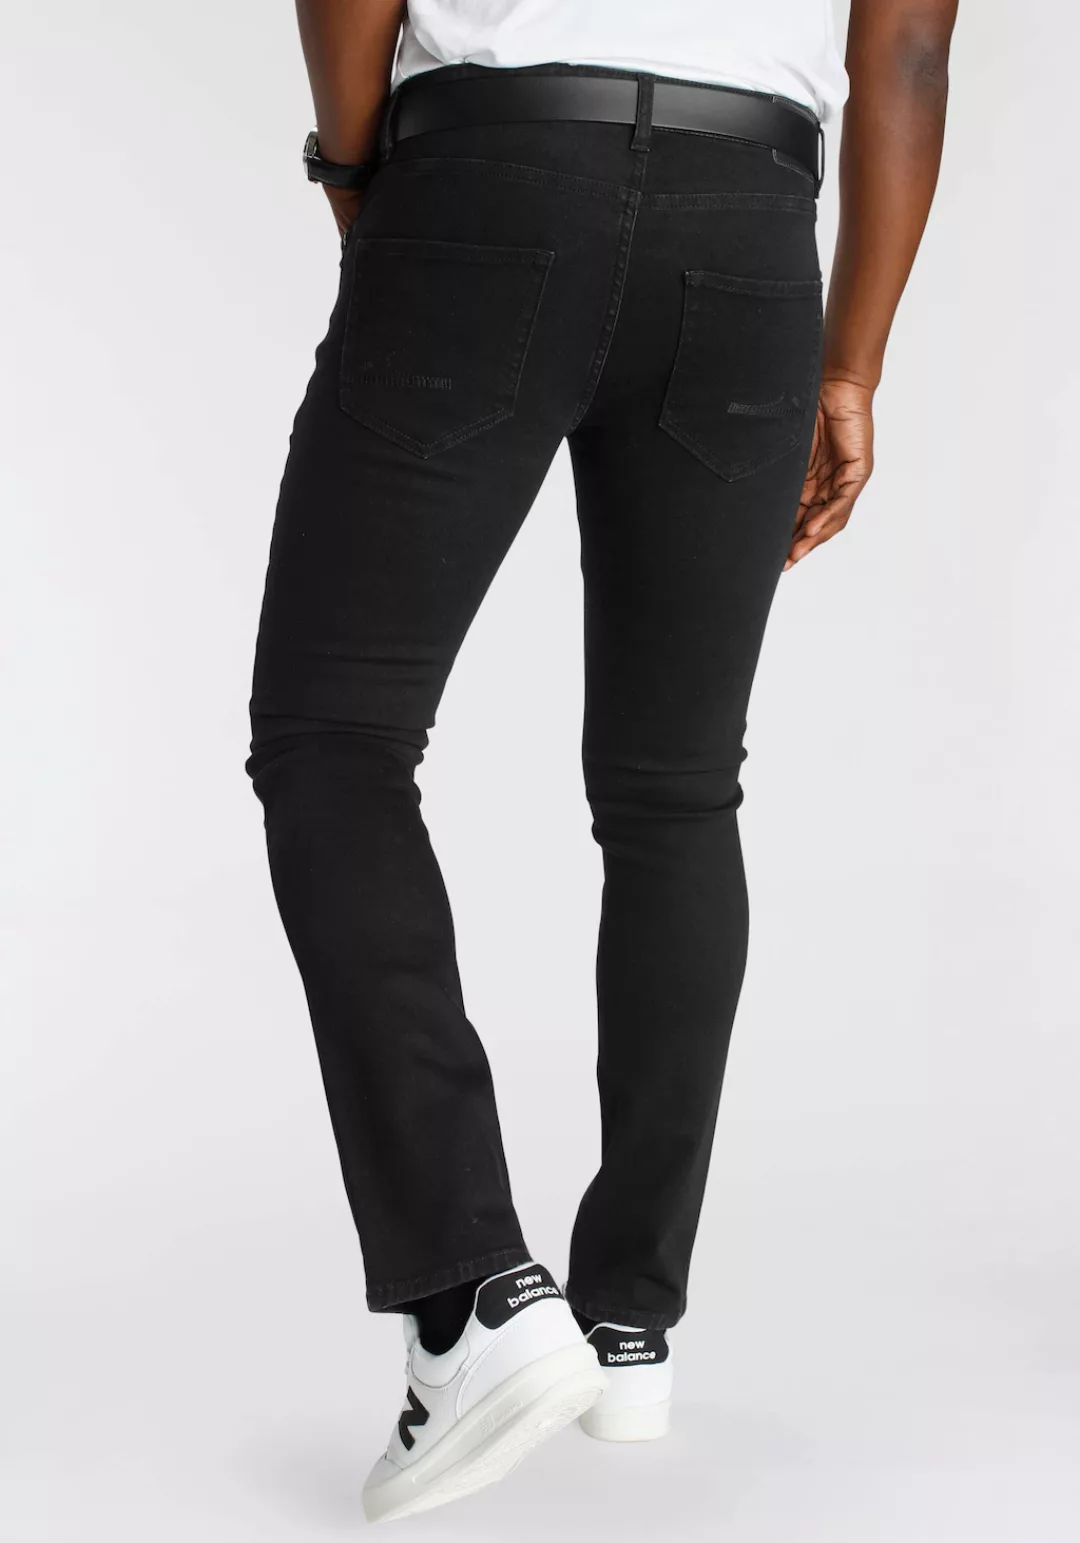 DELMAO Stretch-Jeans "Reed" mit schöner Innenverarbeitung - NEUE MARKE! günstig online kaufen